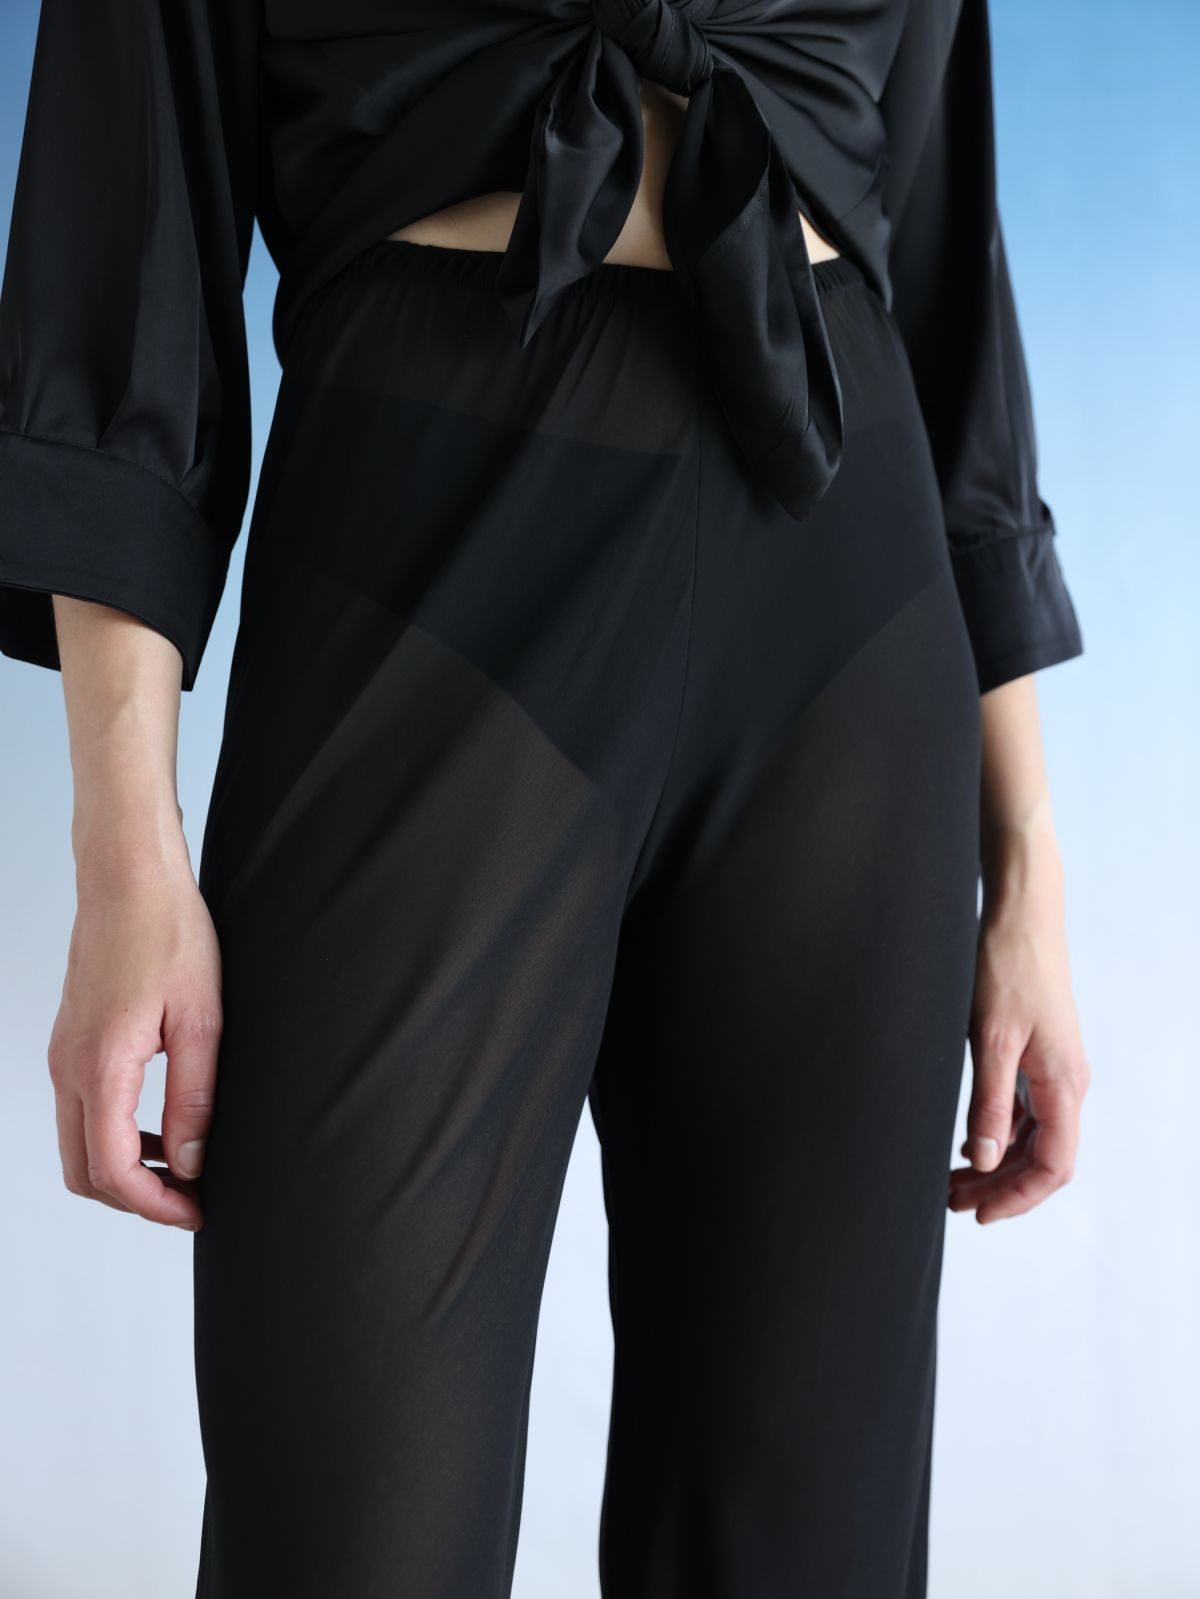  מכנסי שיפון בגזרה ישרה / Elle Sasson של TX COLLAB